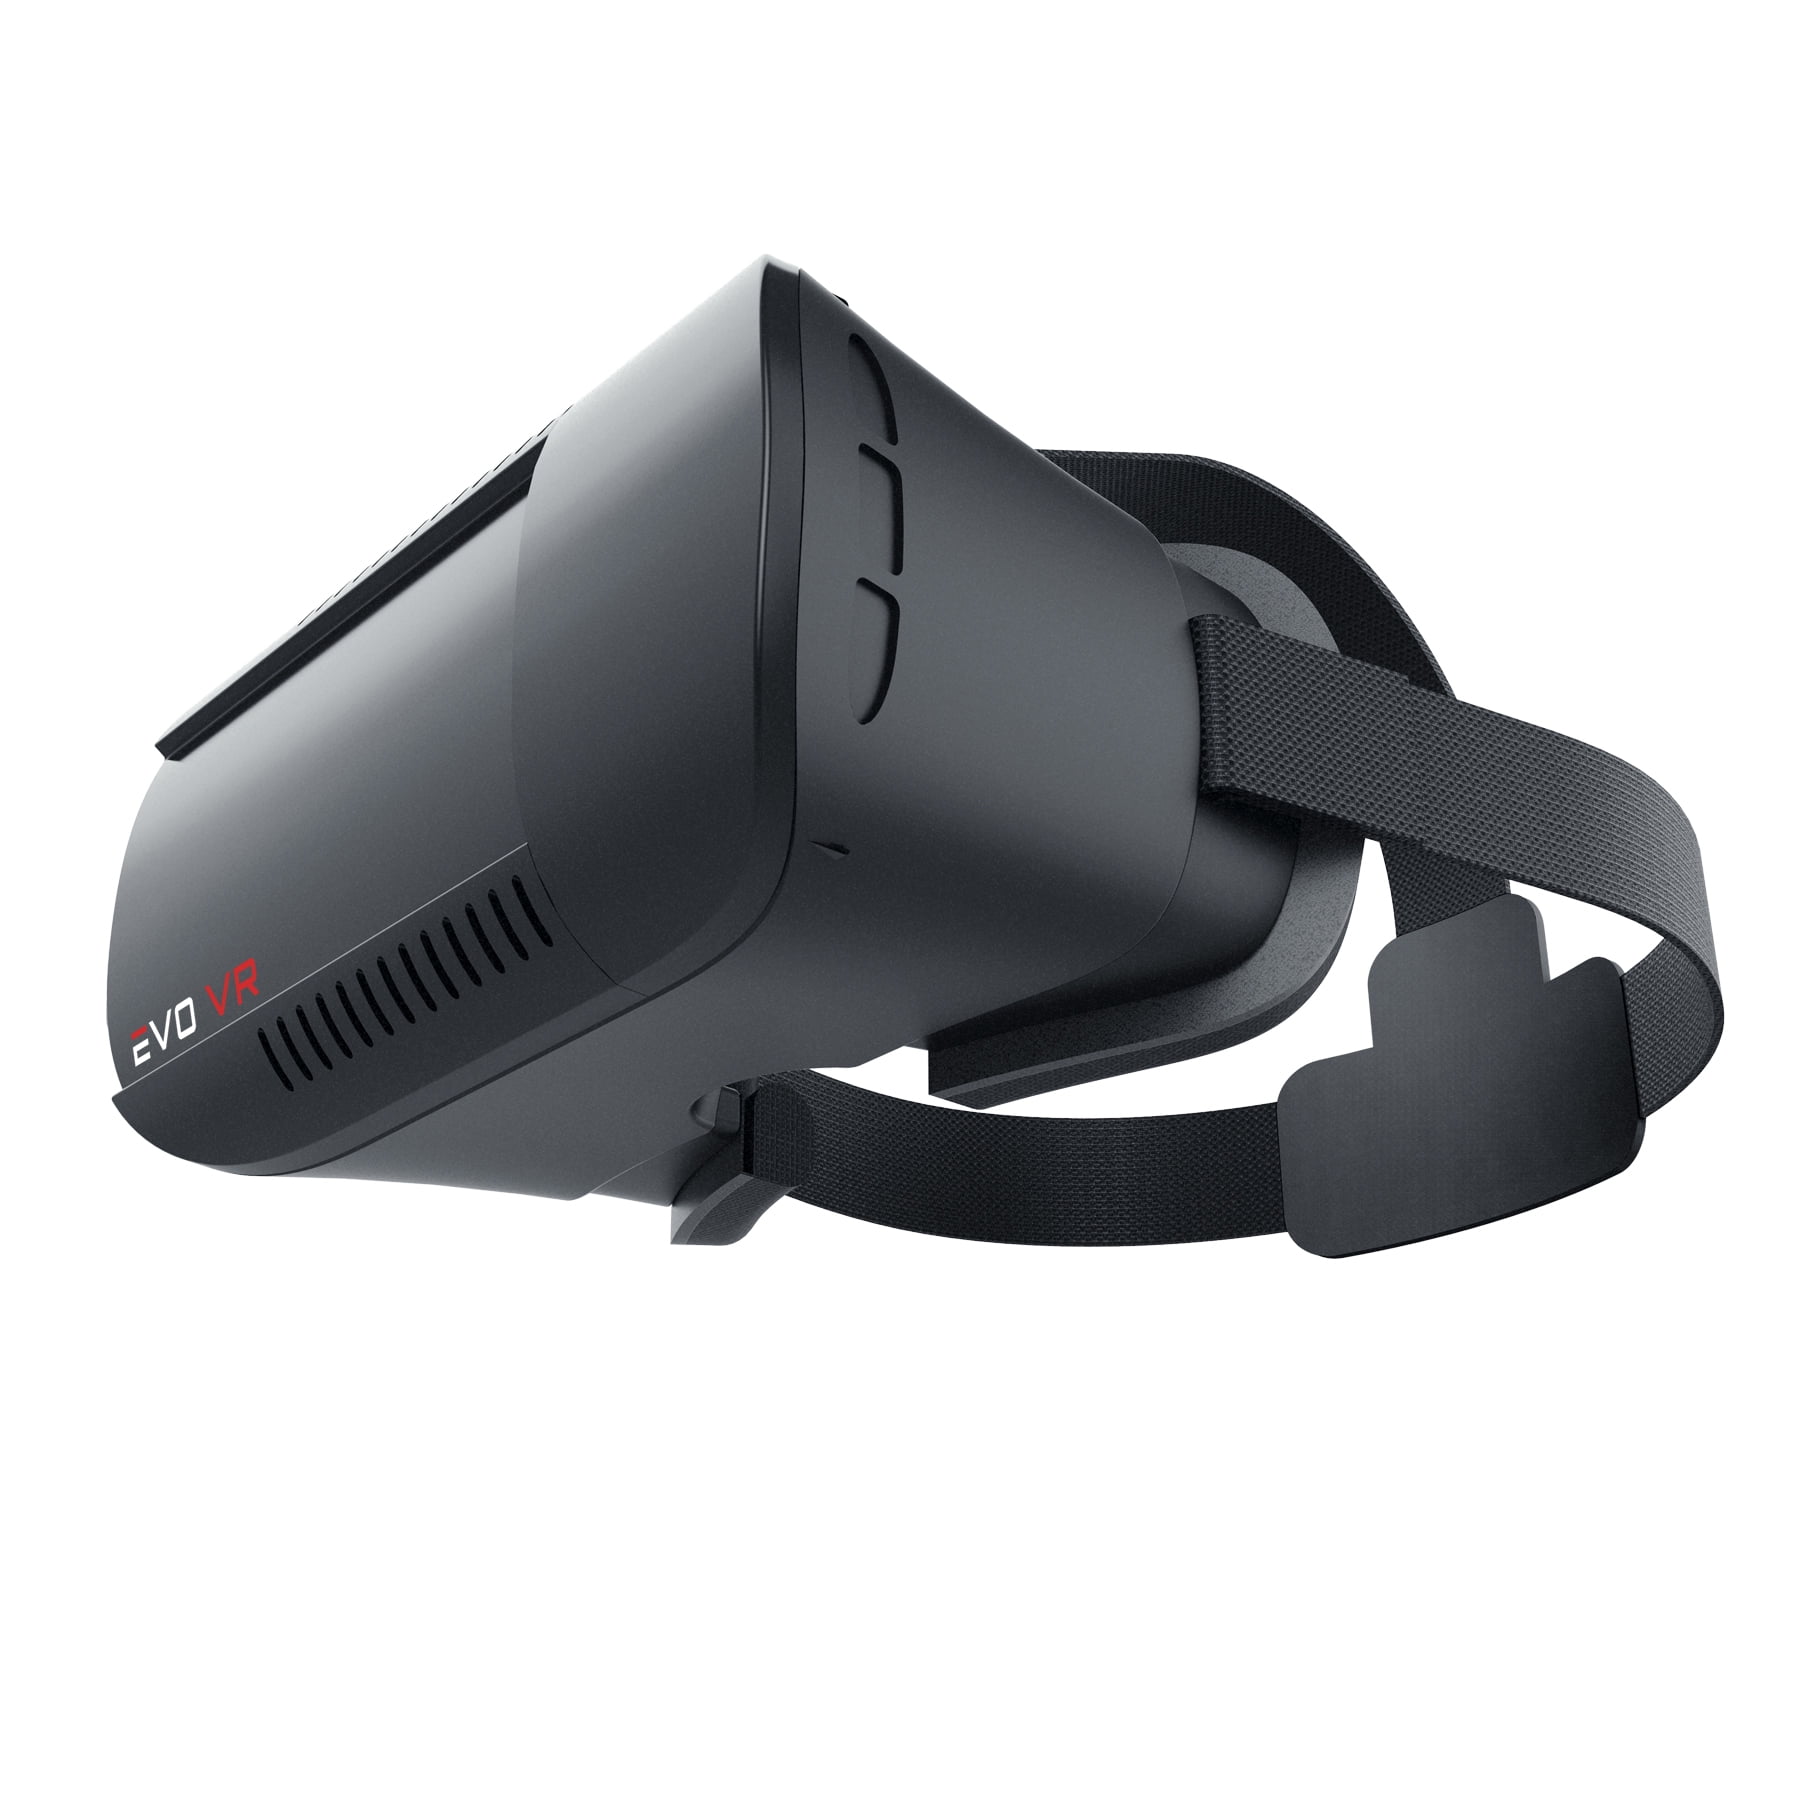 Evo VR MI-VRH01-101 Evo Next Virtual 